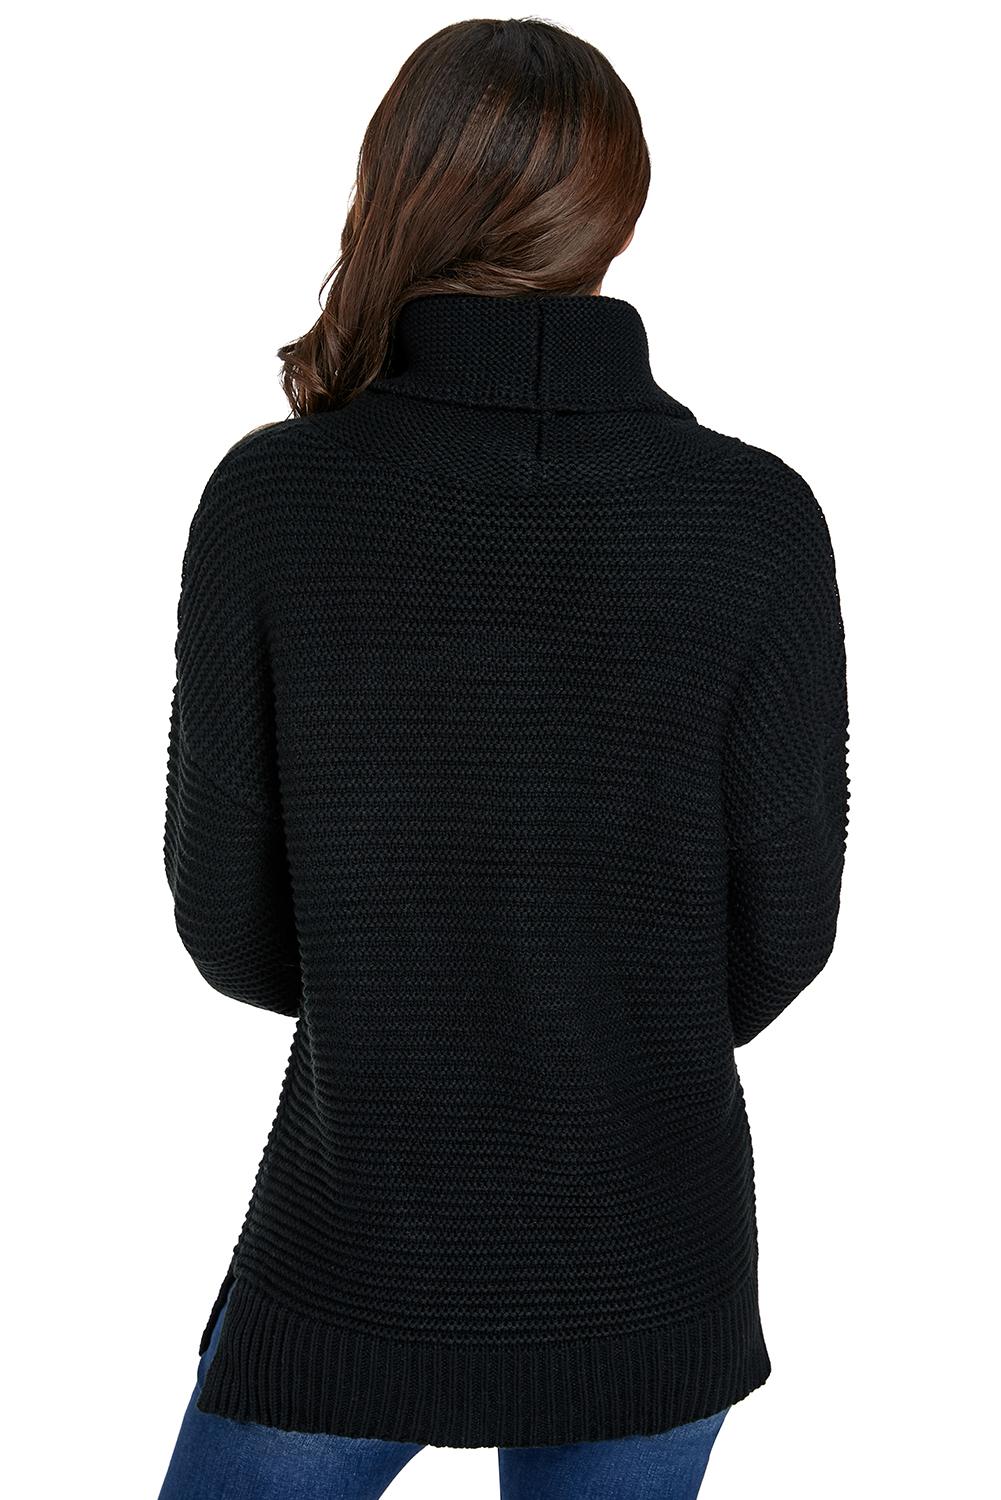 Women Black Cozy Long Sleeves Turtleneck Sweater